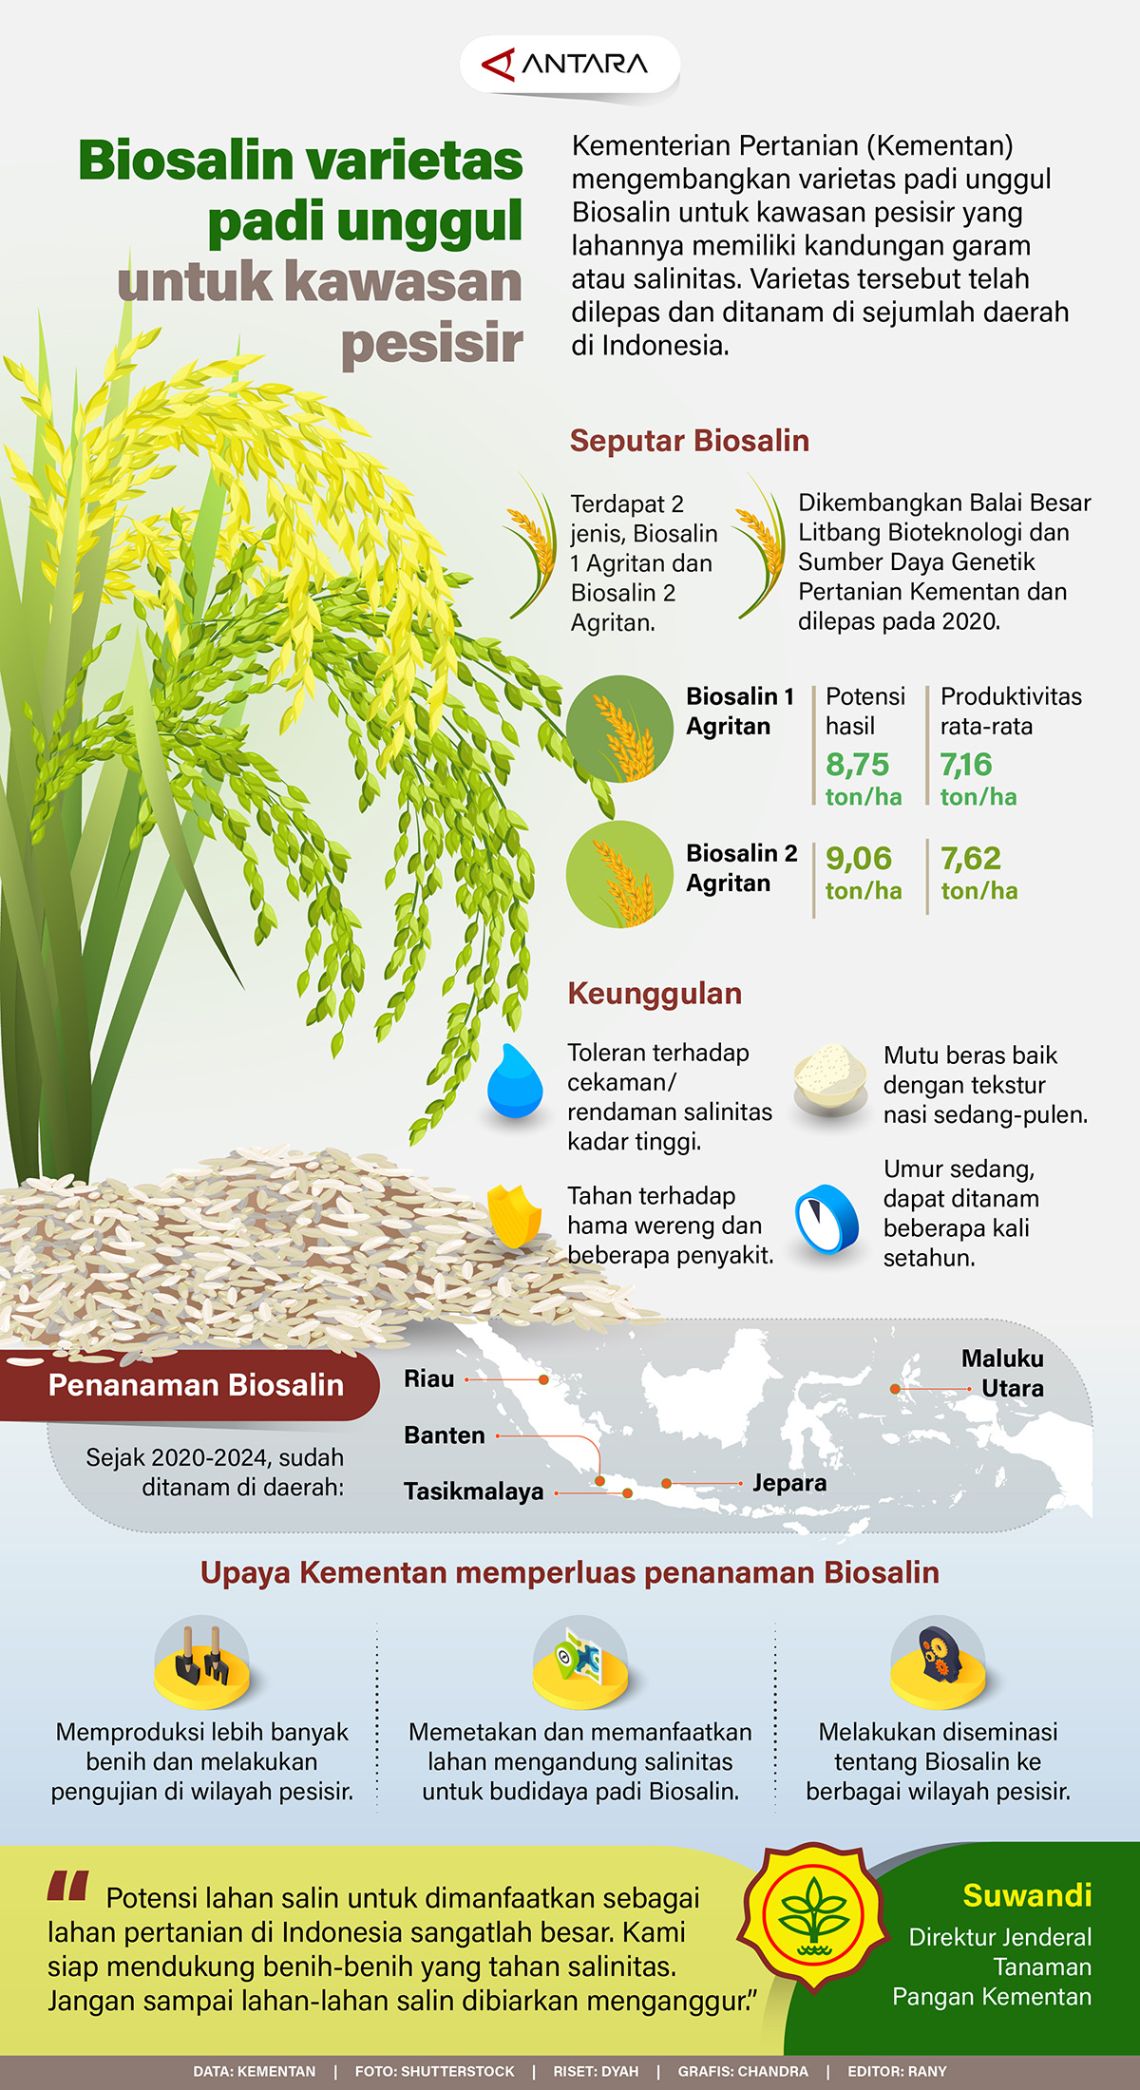 Biosalin varietas padi unggul untuk kawasan pesisir